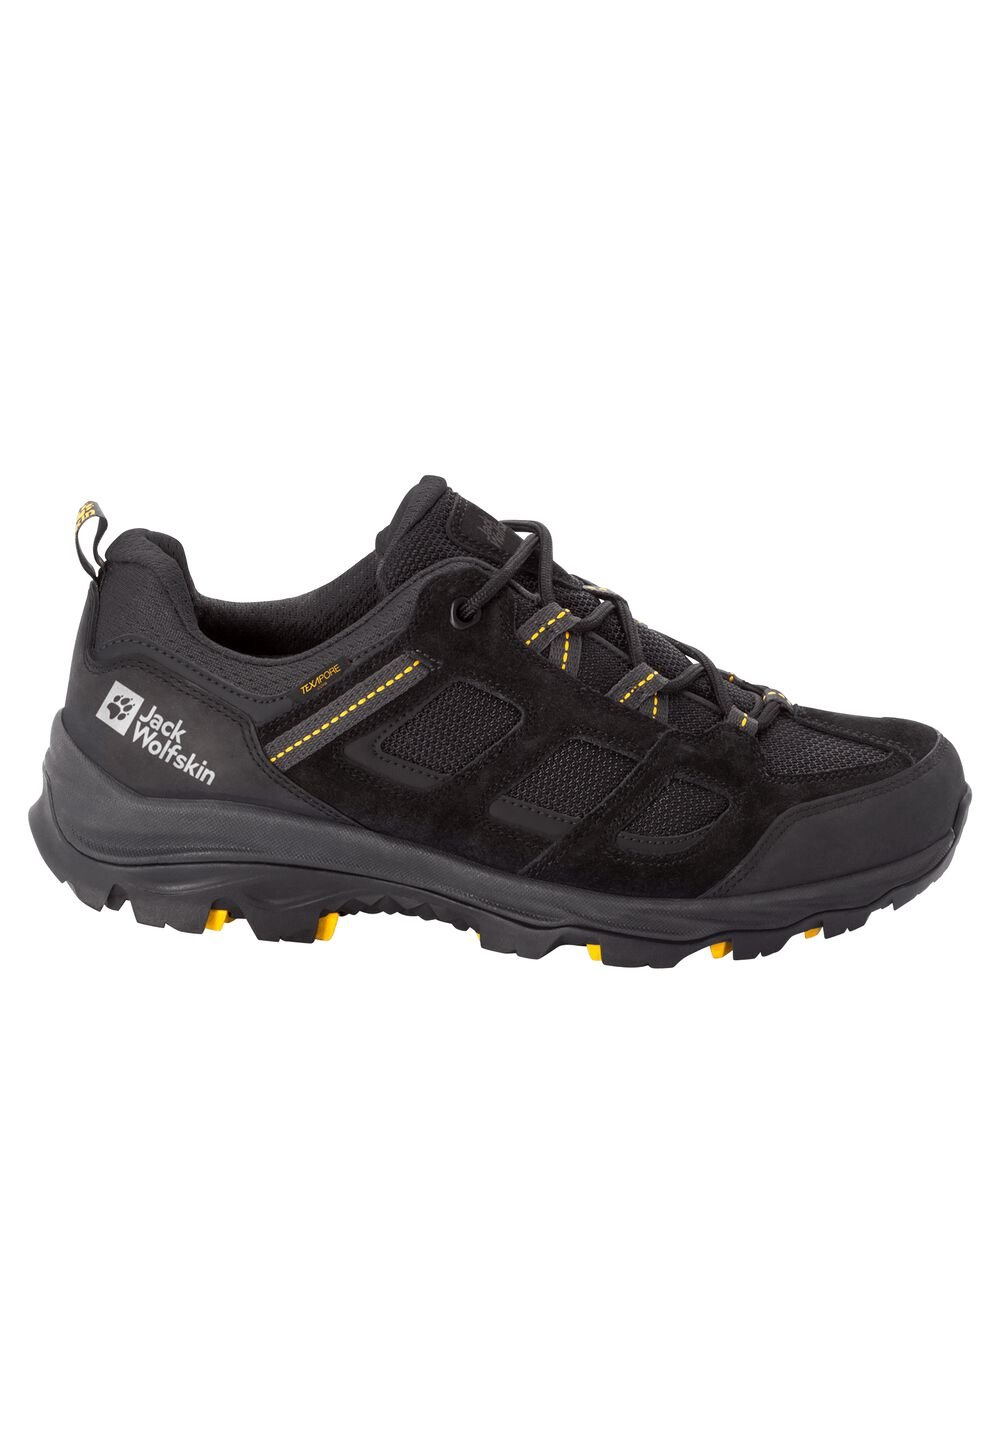 Chaussures de randonnée imperméables hommes Vojo 3 Texapore Low Men 7,5 noir black / burly yellow XT